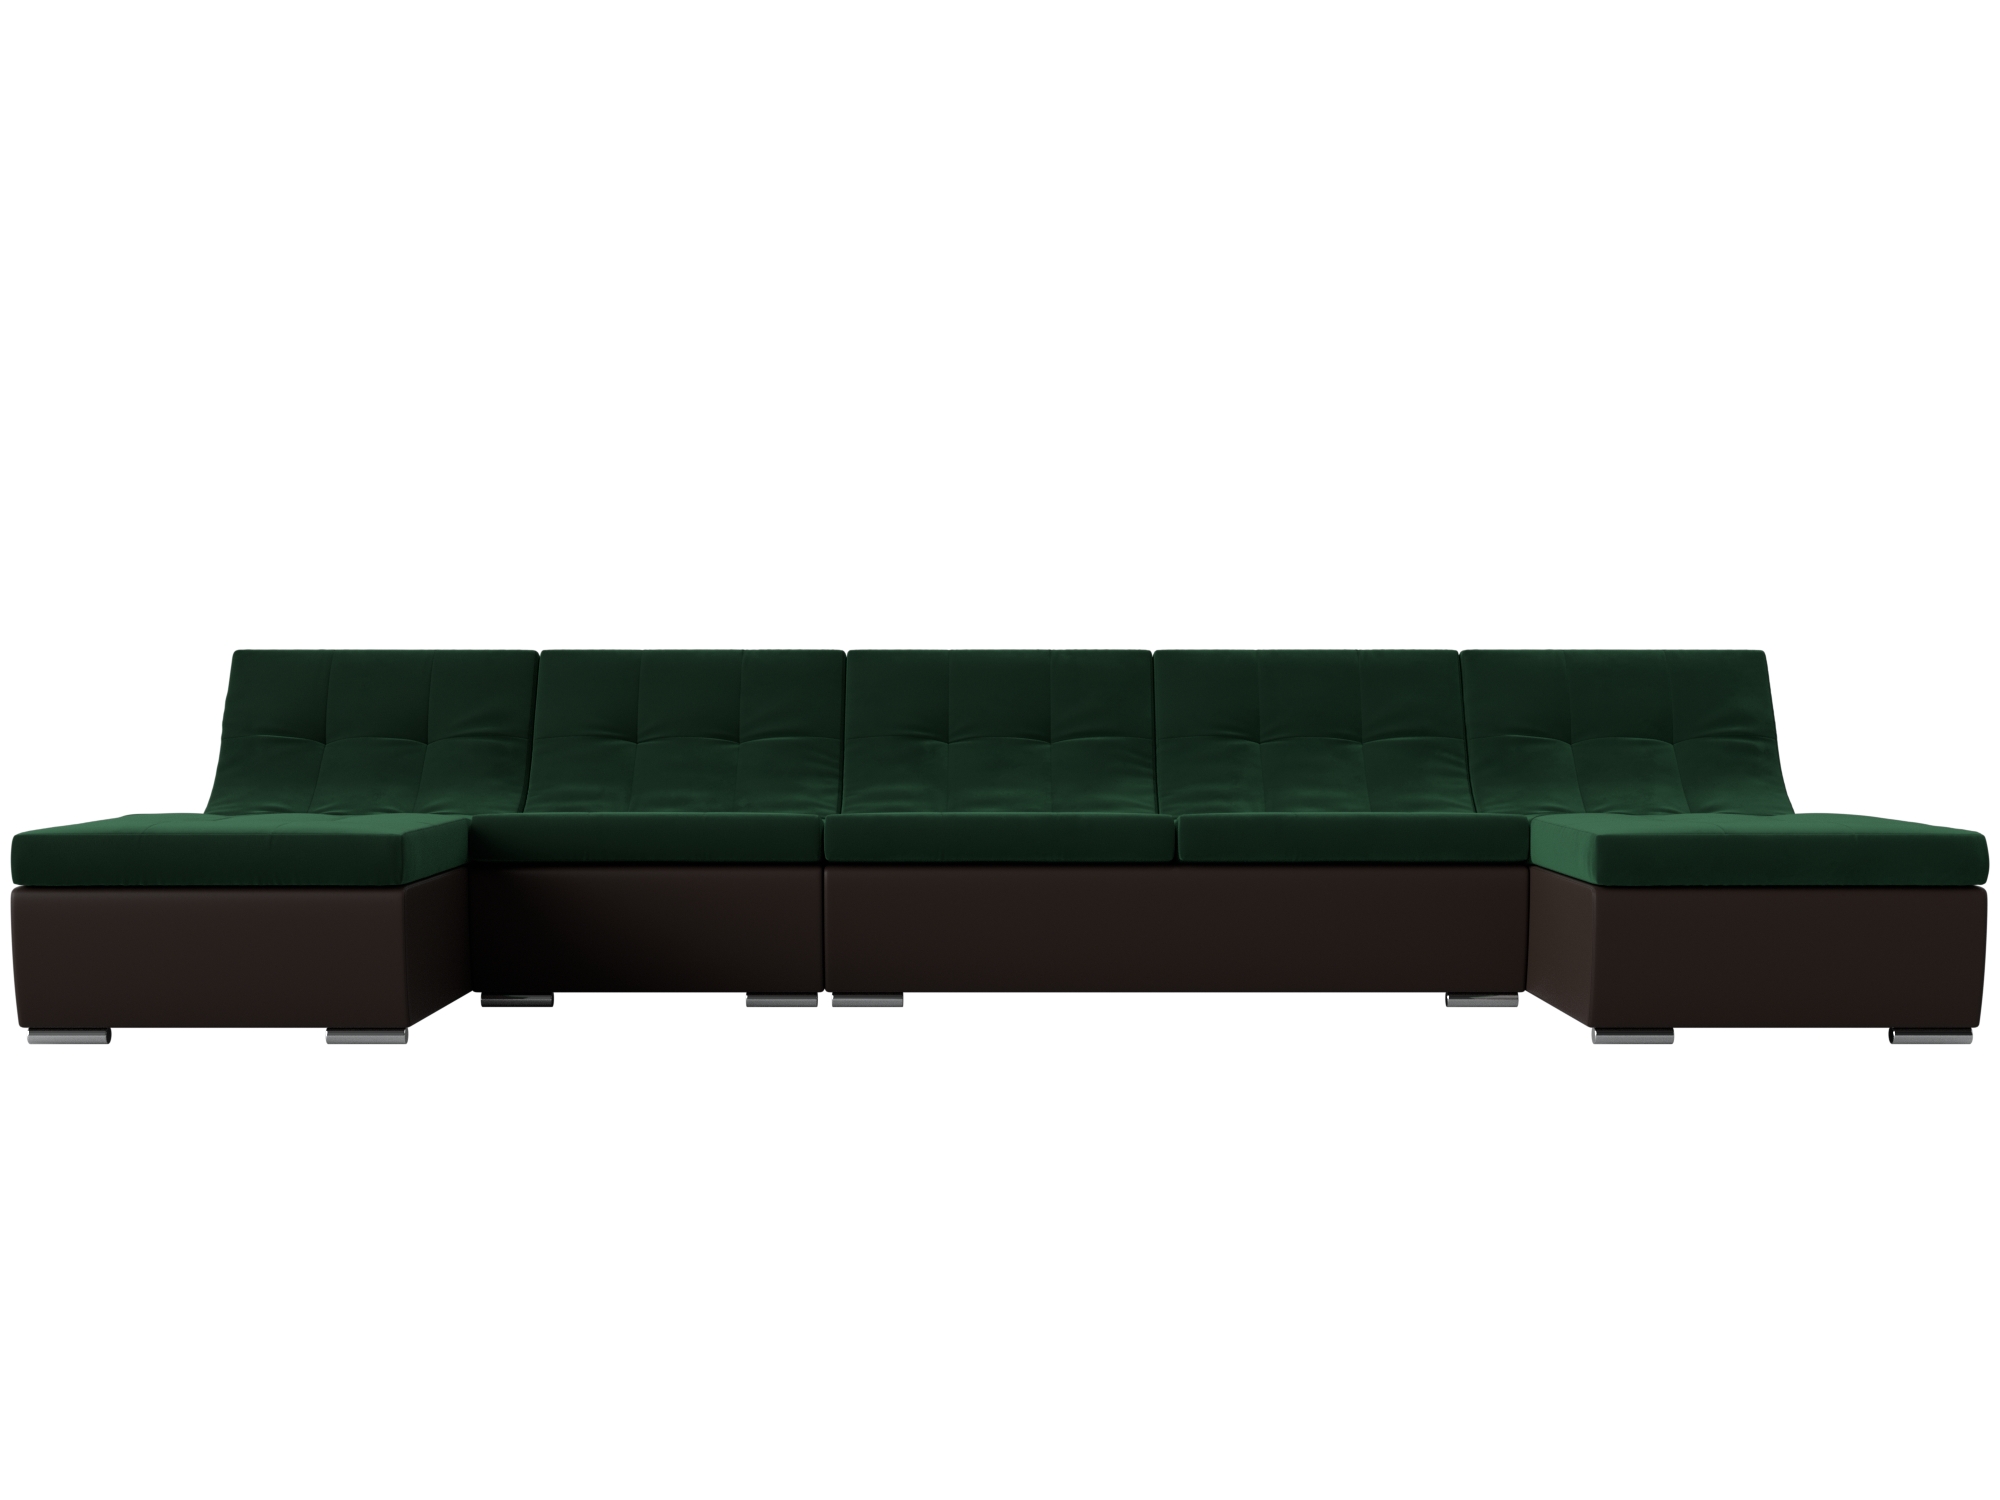 п образный модульный диван монреаль mebelvia коричневый бежевый велюр экокожа лдсп П-образный модульный диван Монреаль Long MebelVia Зеленый, Коричневый, Велюр, Экокожа, ЛДСП